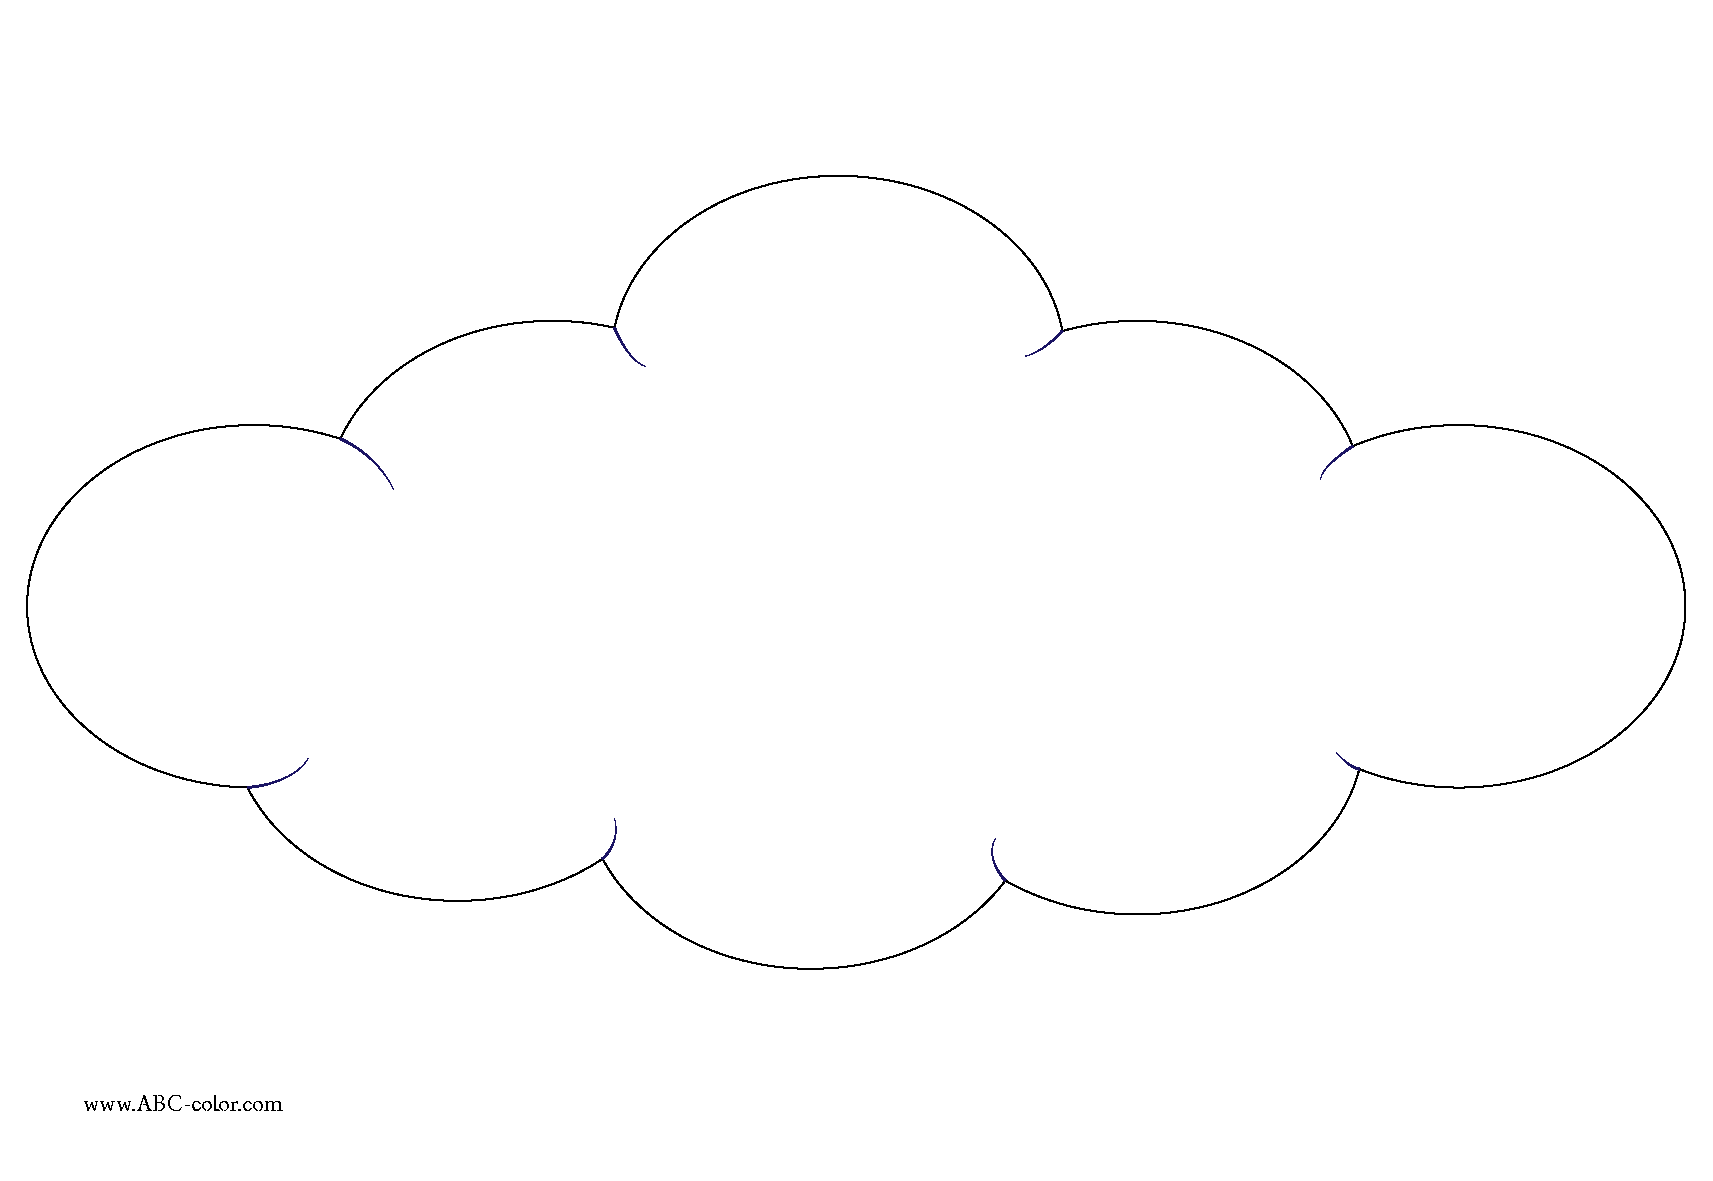 http://www.abc-color.com/image/coloring/clouds/001/cloud/cloud-bitmap-coloring.png